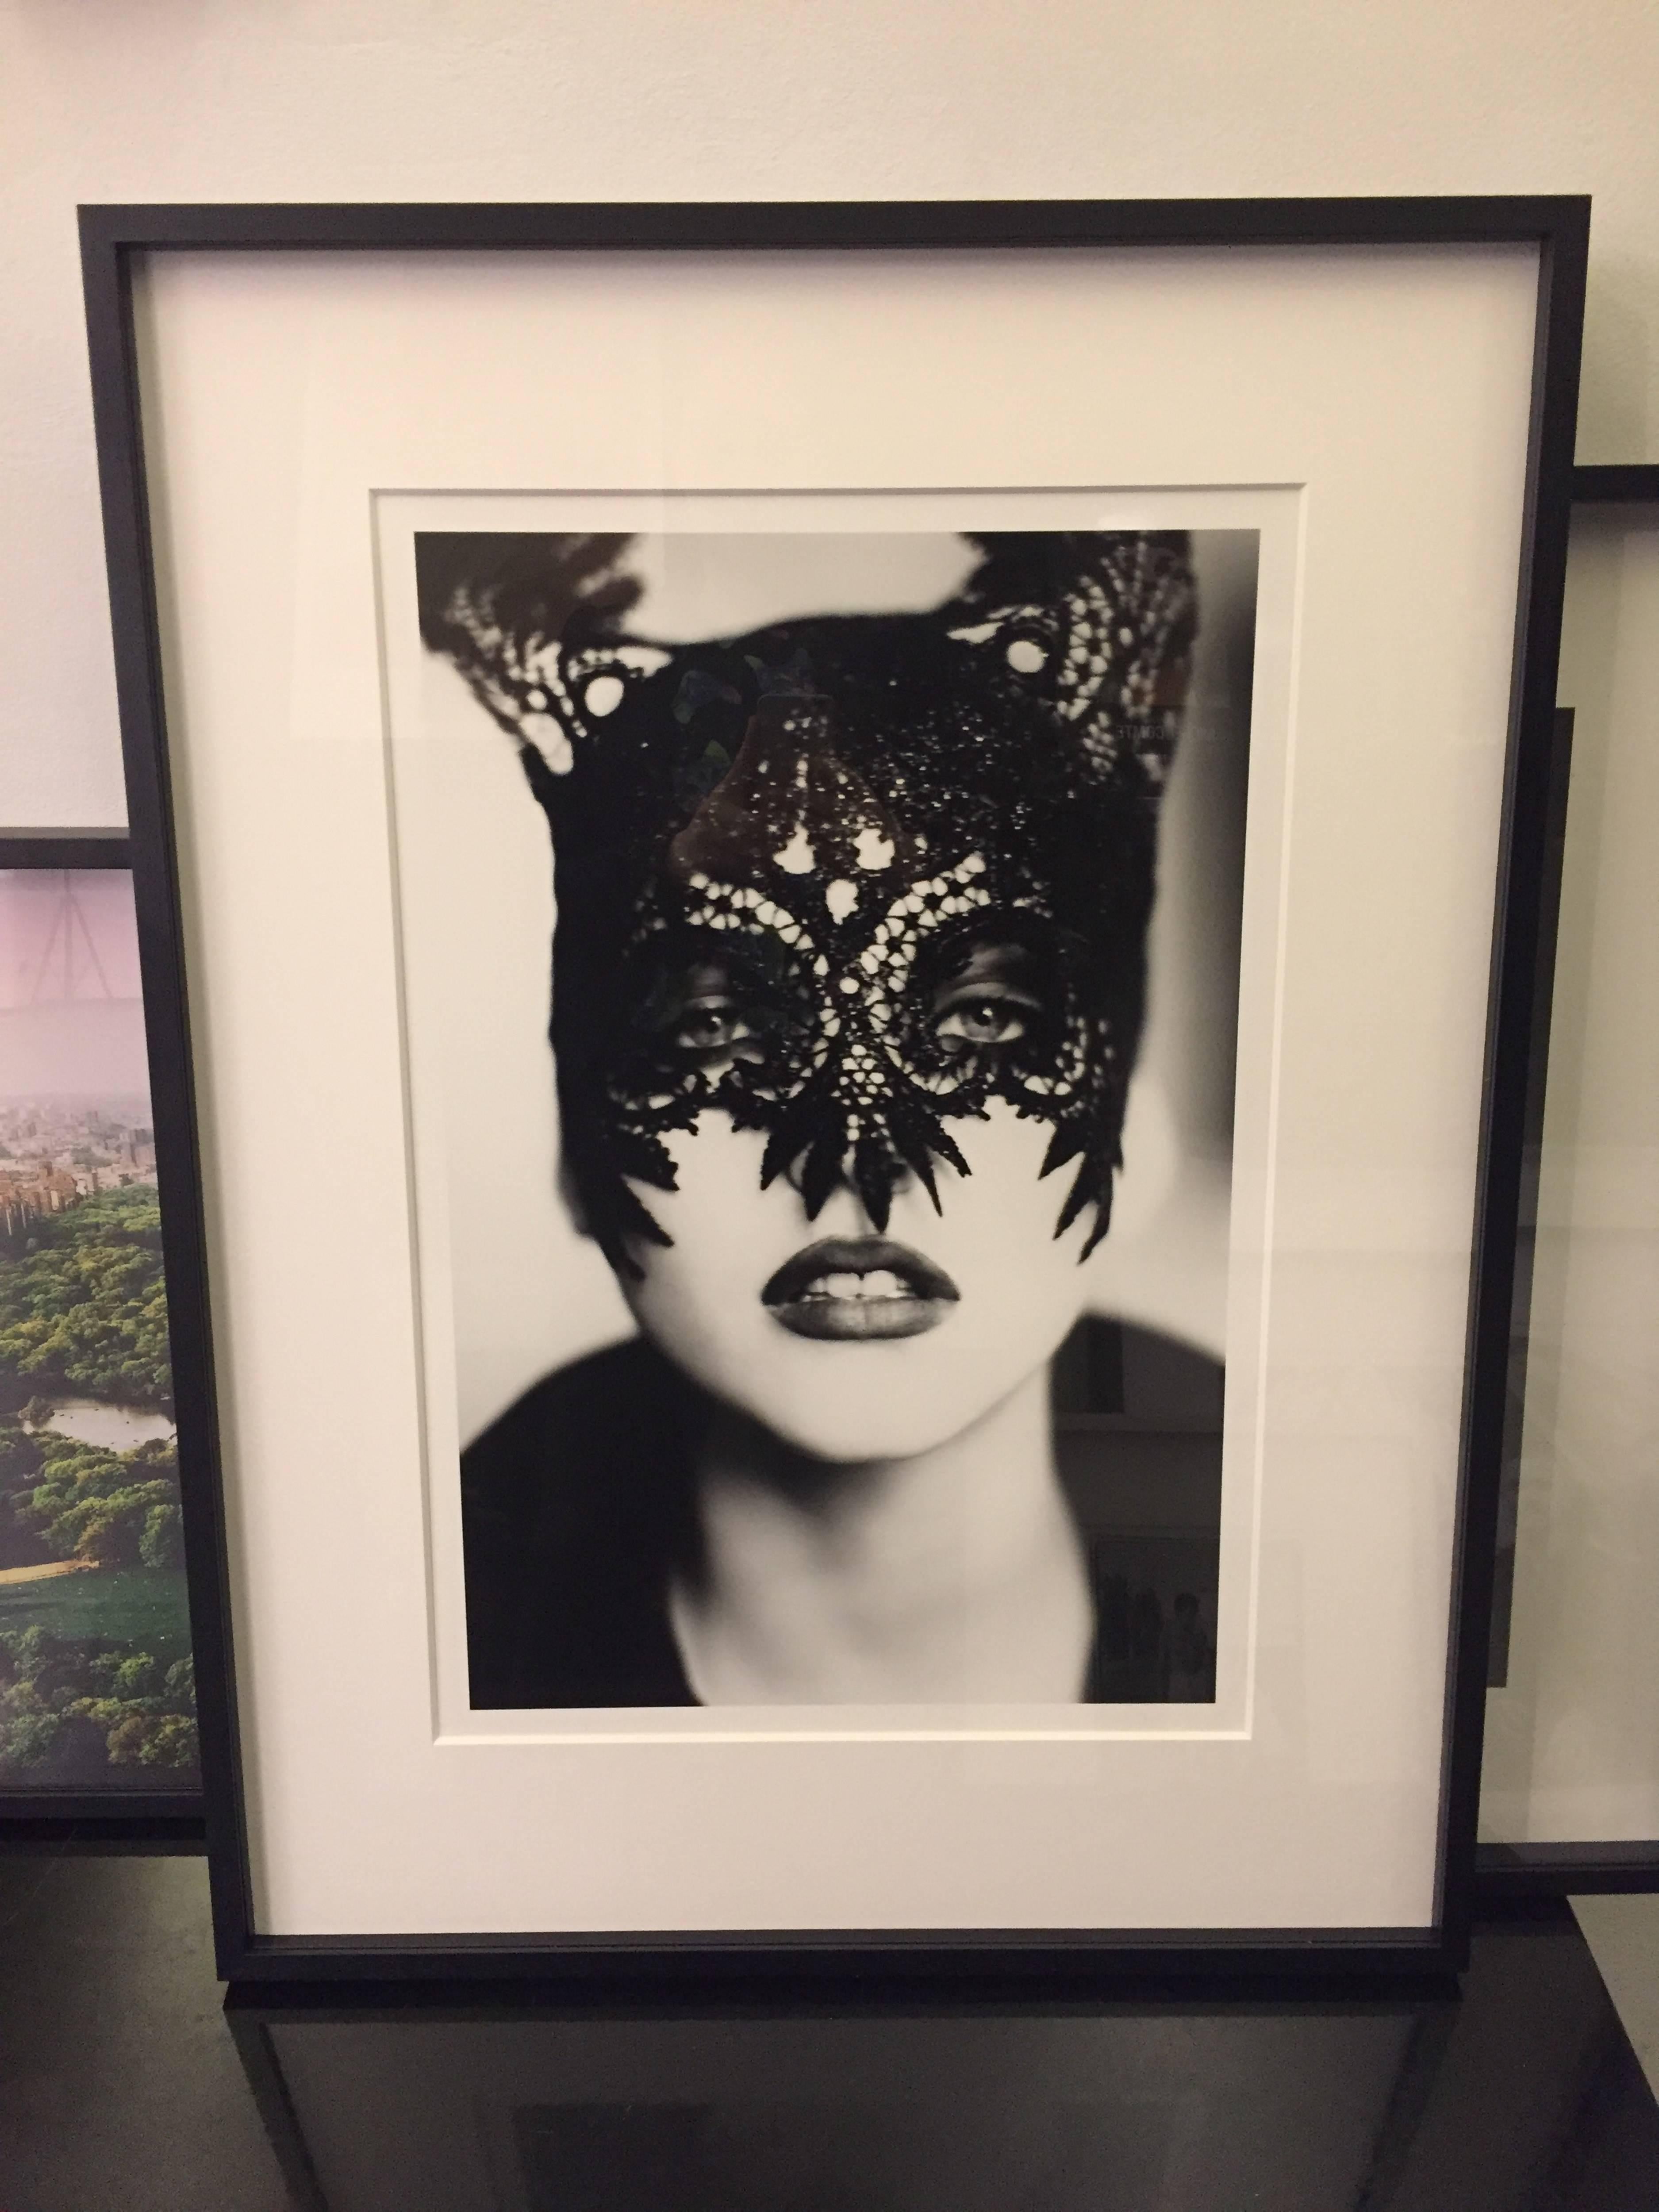 The Mask (Nadja Auermann) - Photograph by Ellen von Unwerth